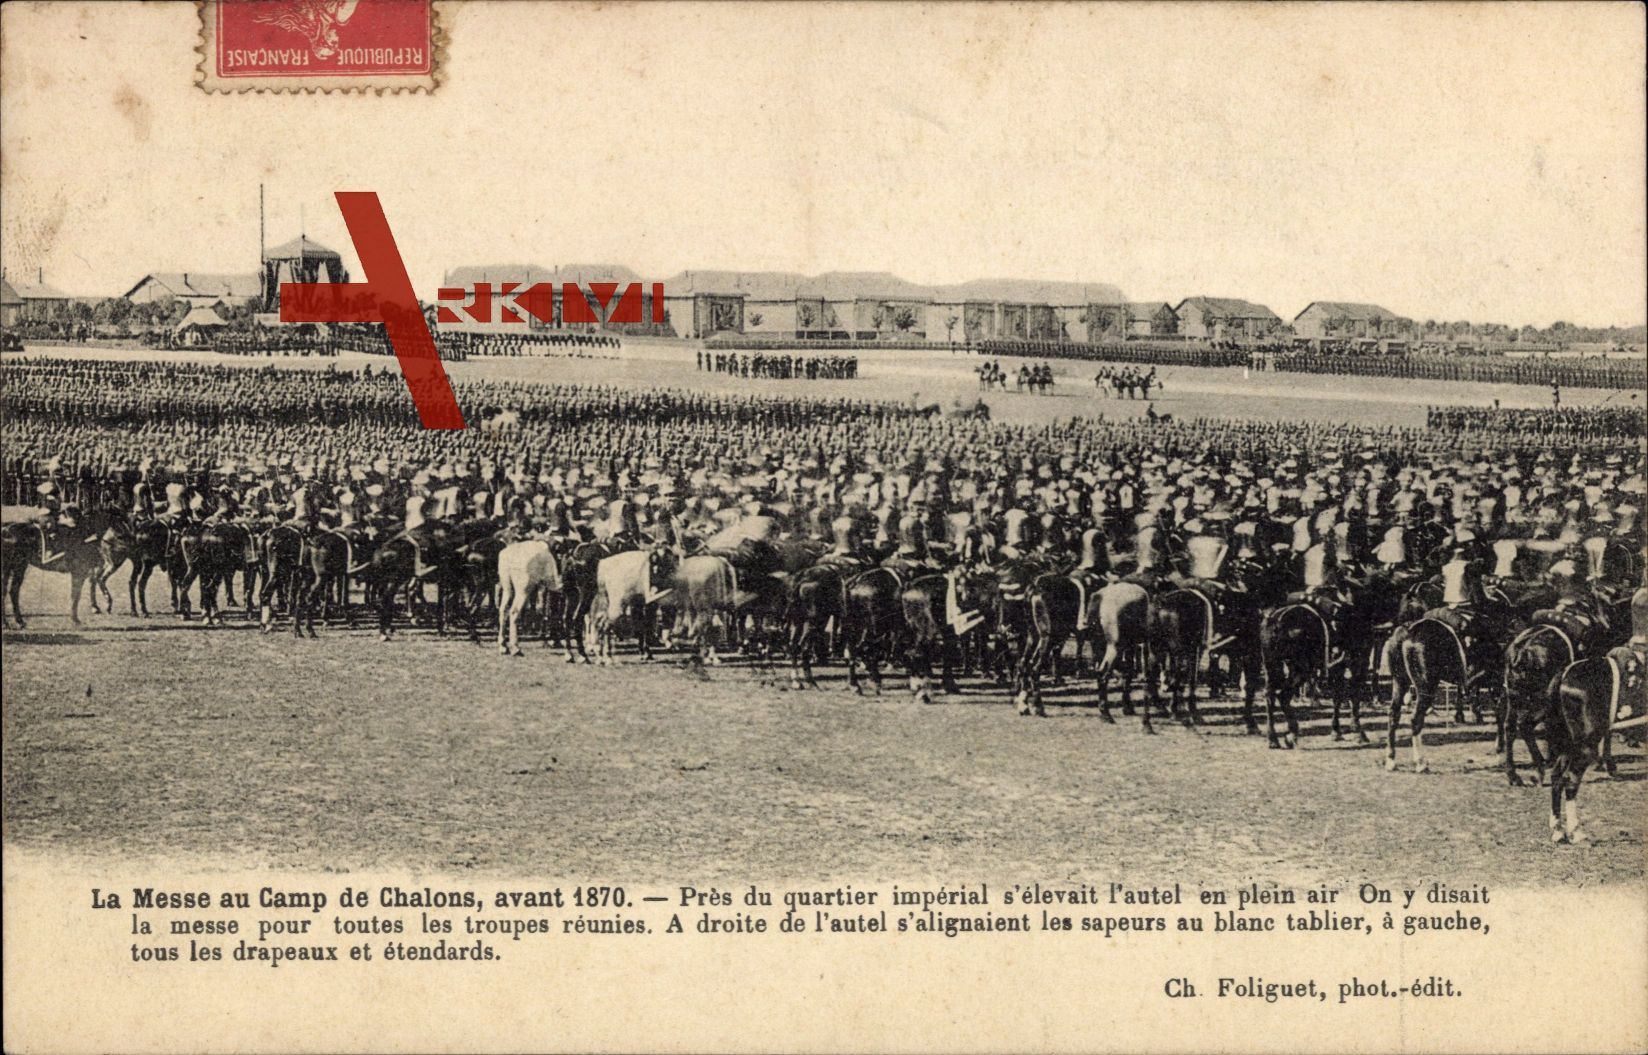 La Messe au Camp de Chalons, avant 1870, Quartier impérial